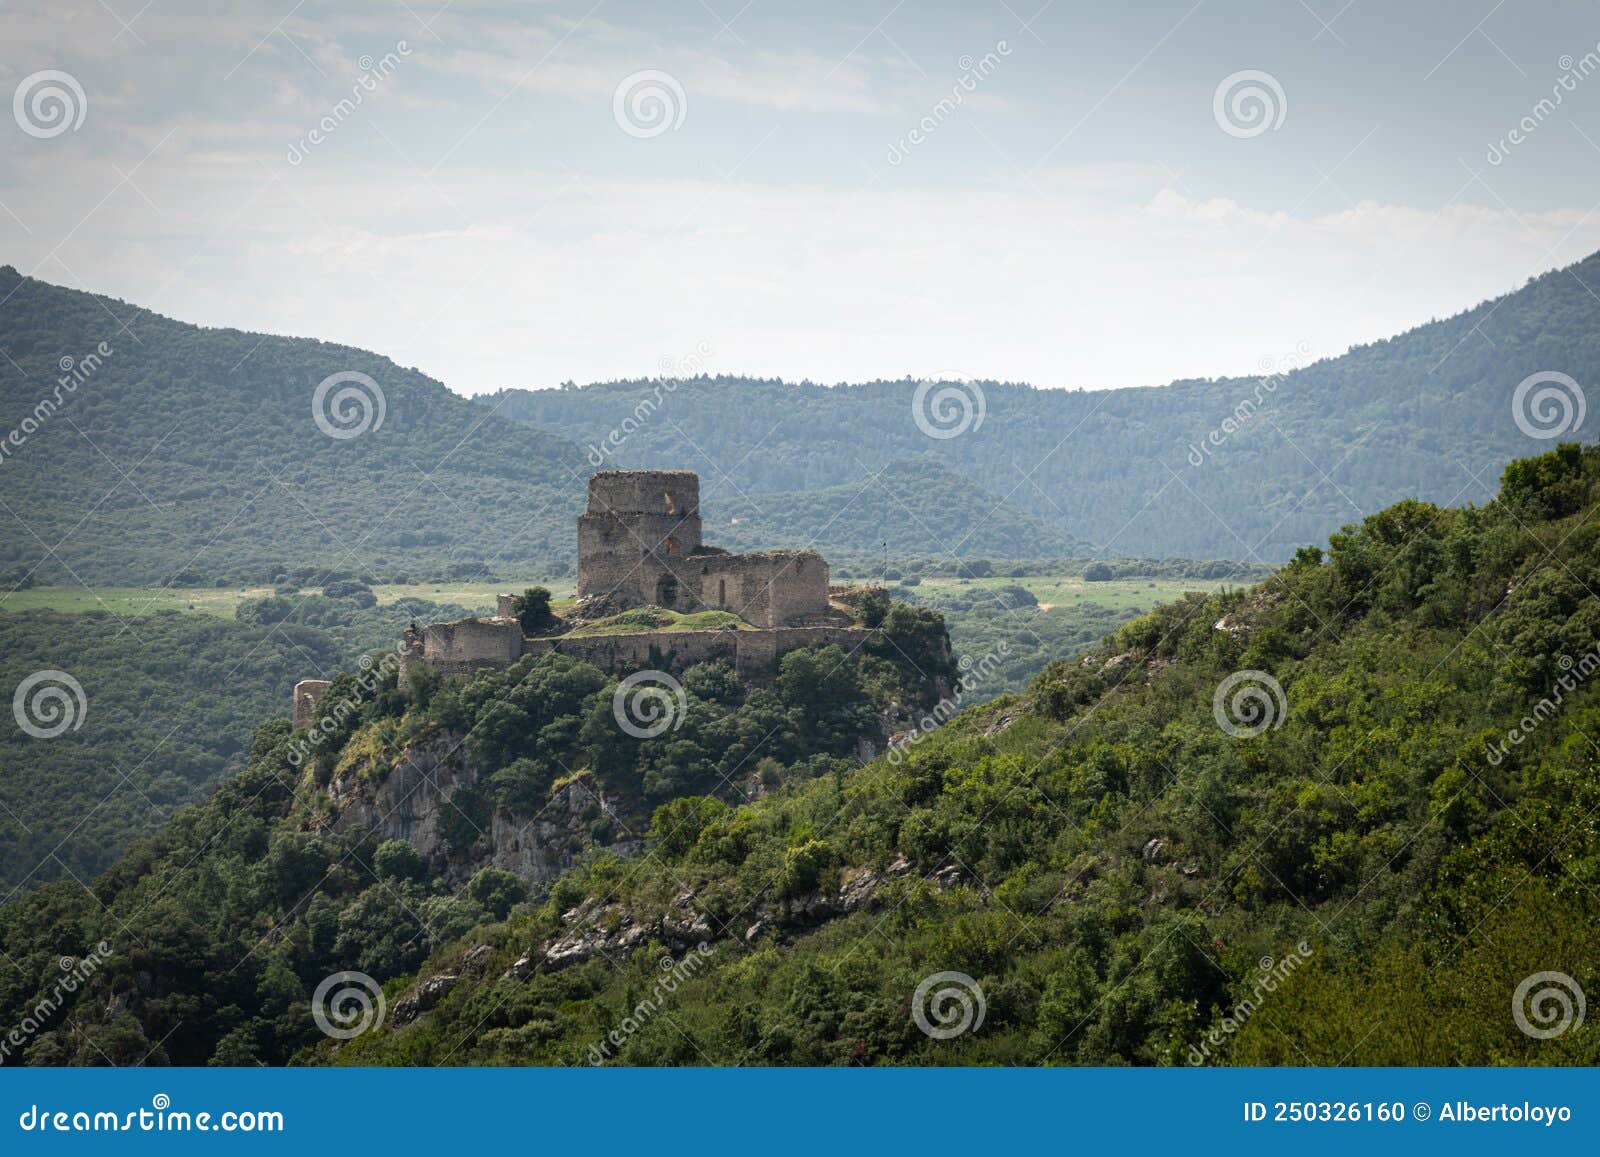 castle of lanos in ocio village, alava, spain